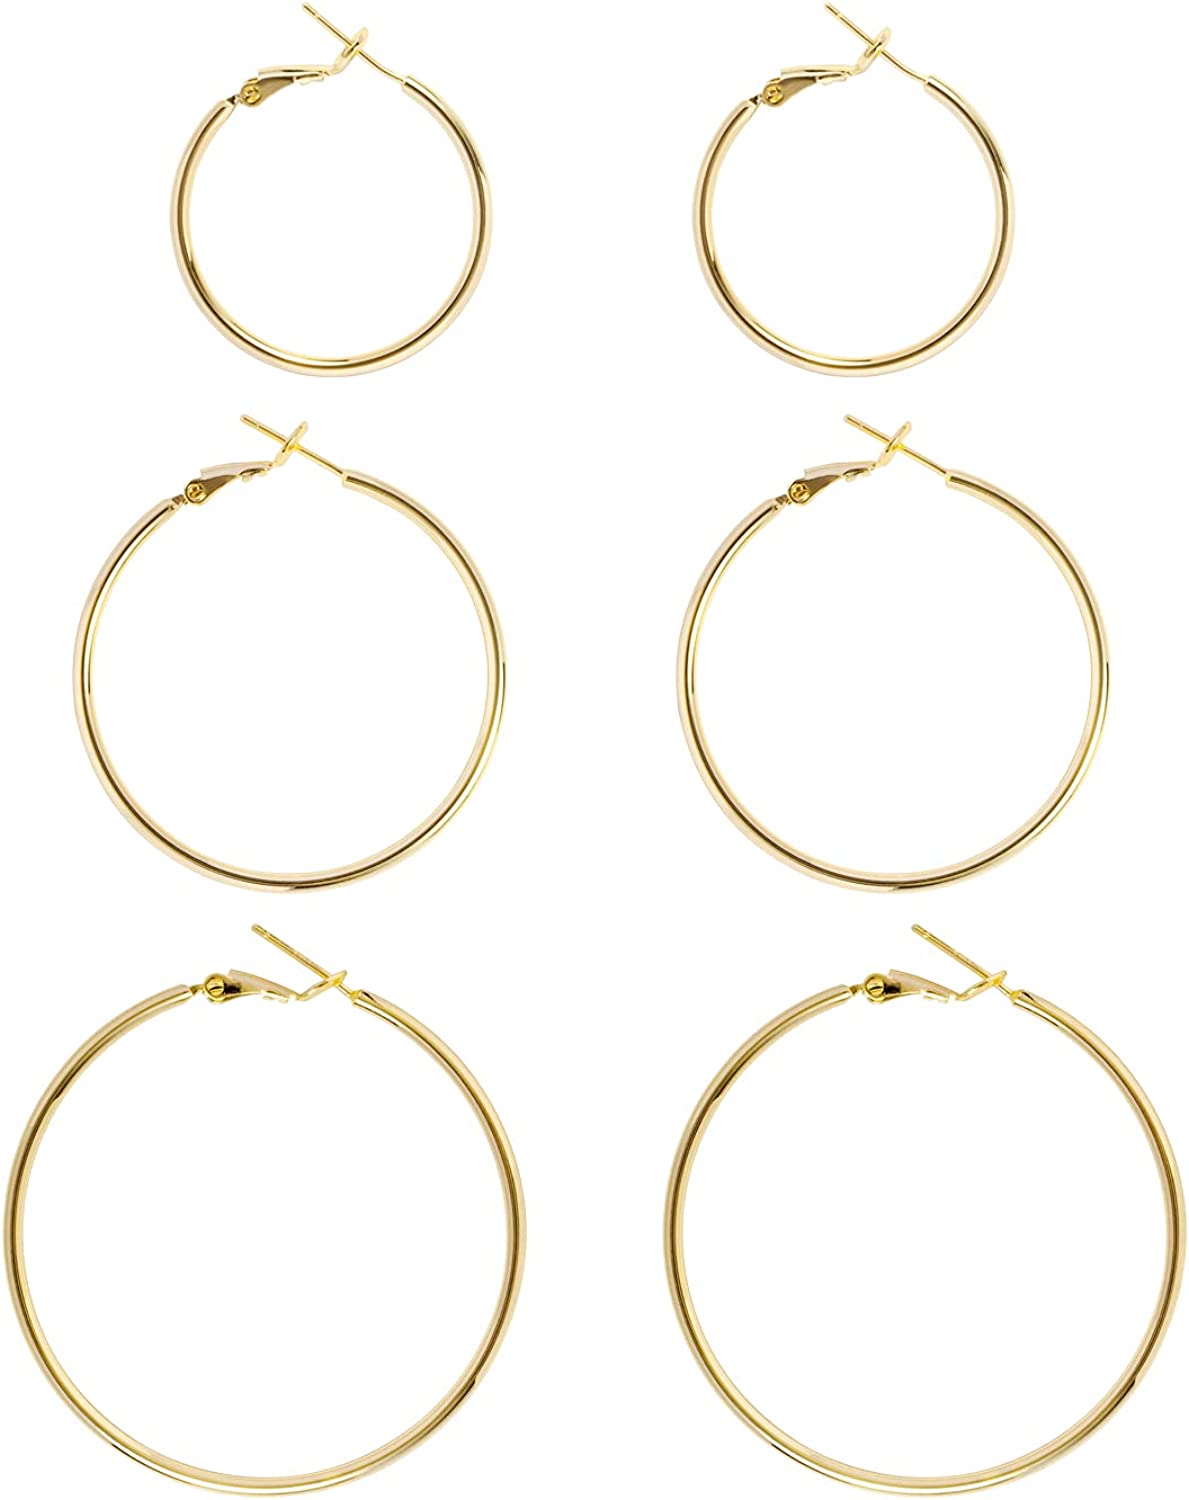 Big Gold Hoop Earrings for Women Hypoallergenic 925 Sterling Silver Post Thin Loop 14K Gold Plated Hoop Earrings Set for Girls, 3 Pairs